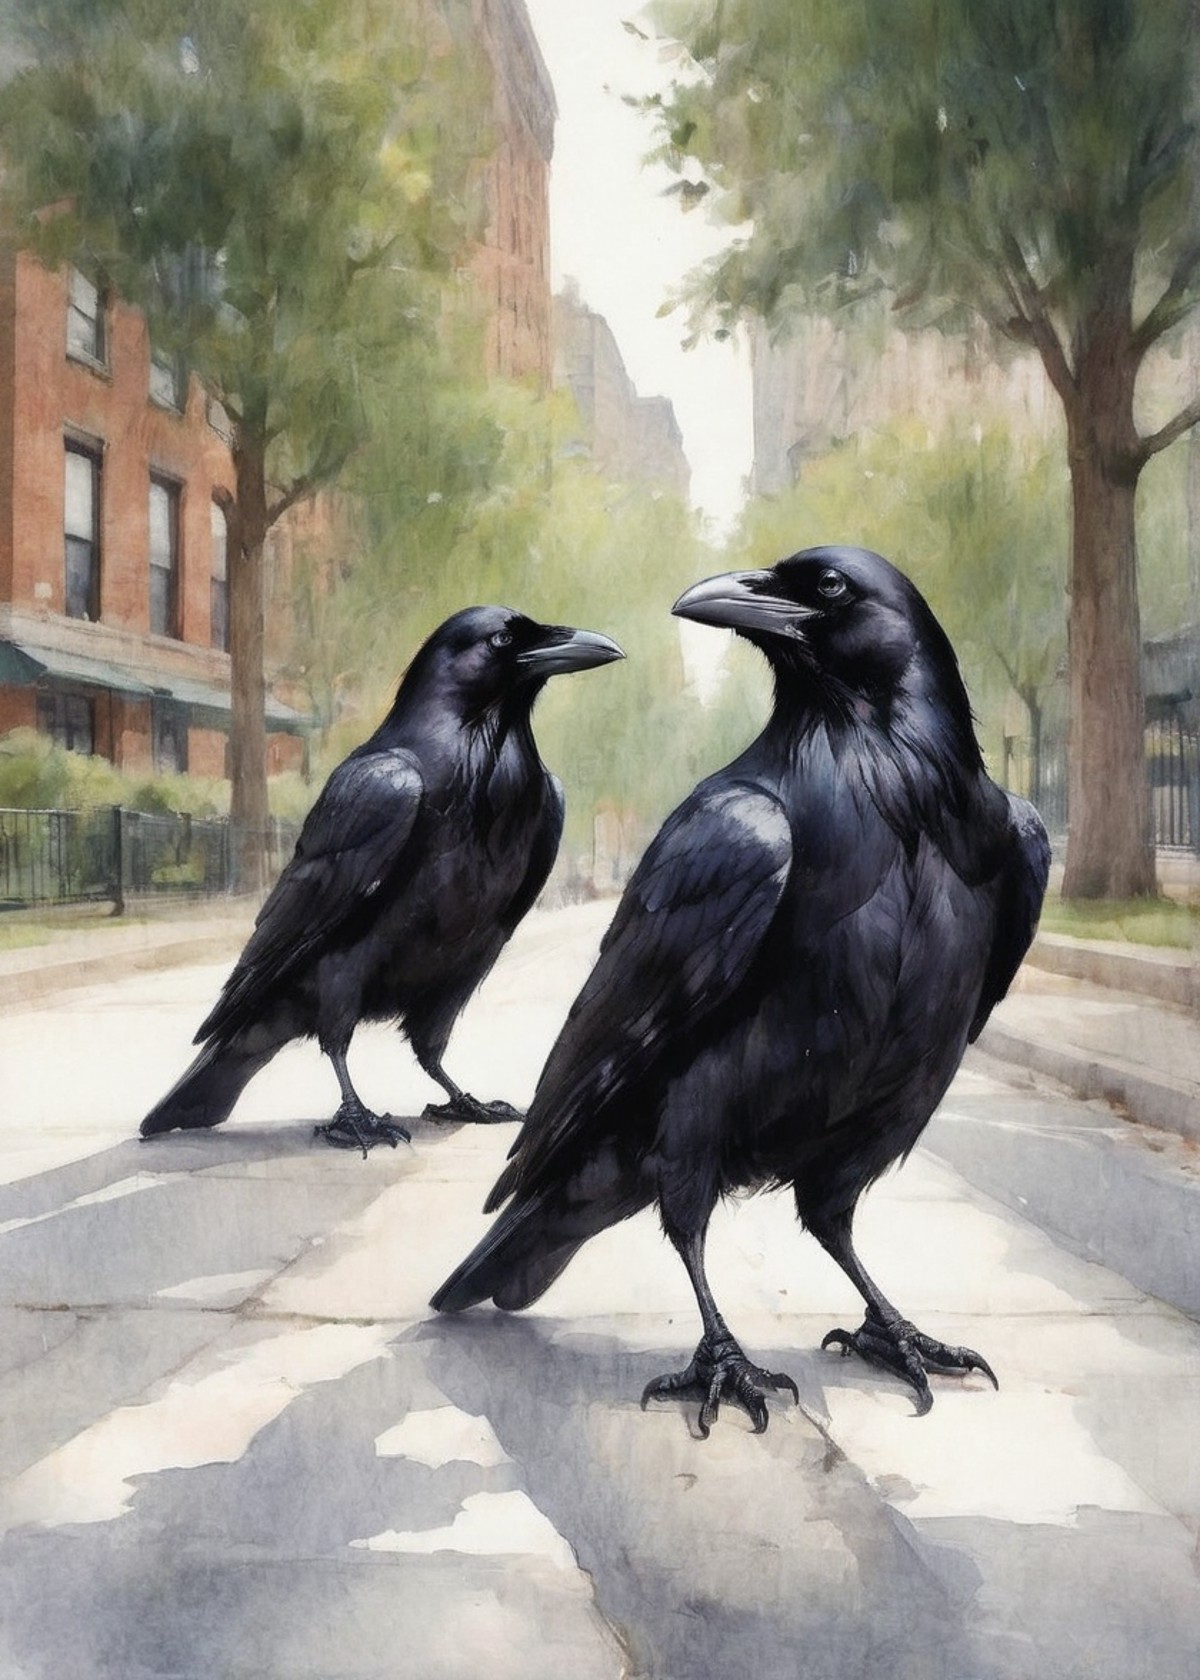 2 ravens on a city park sidewalk closeup low angle